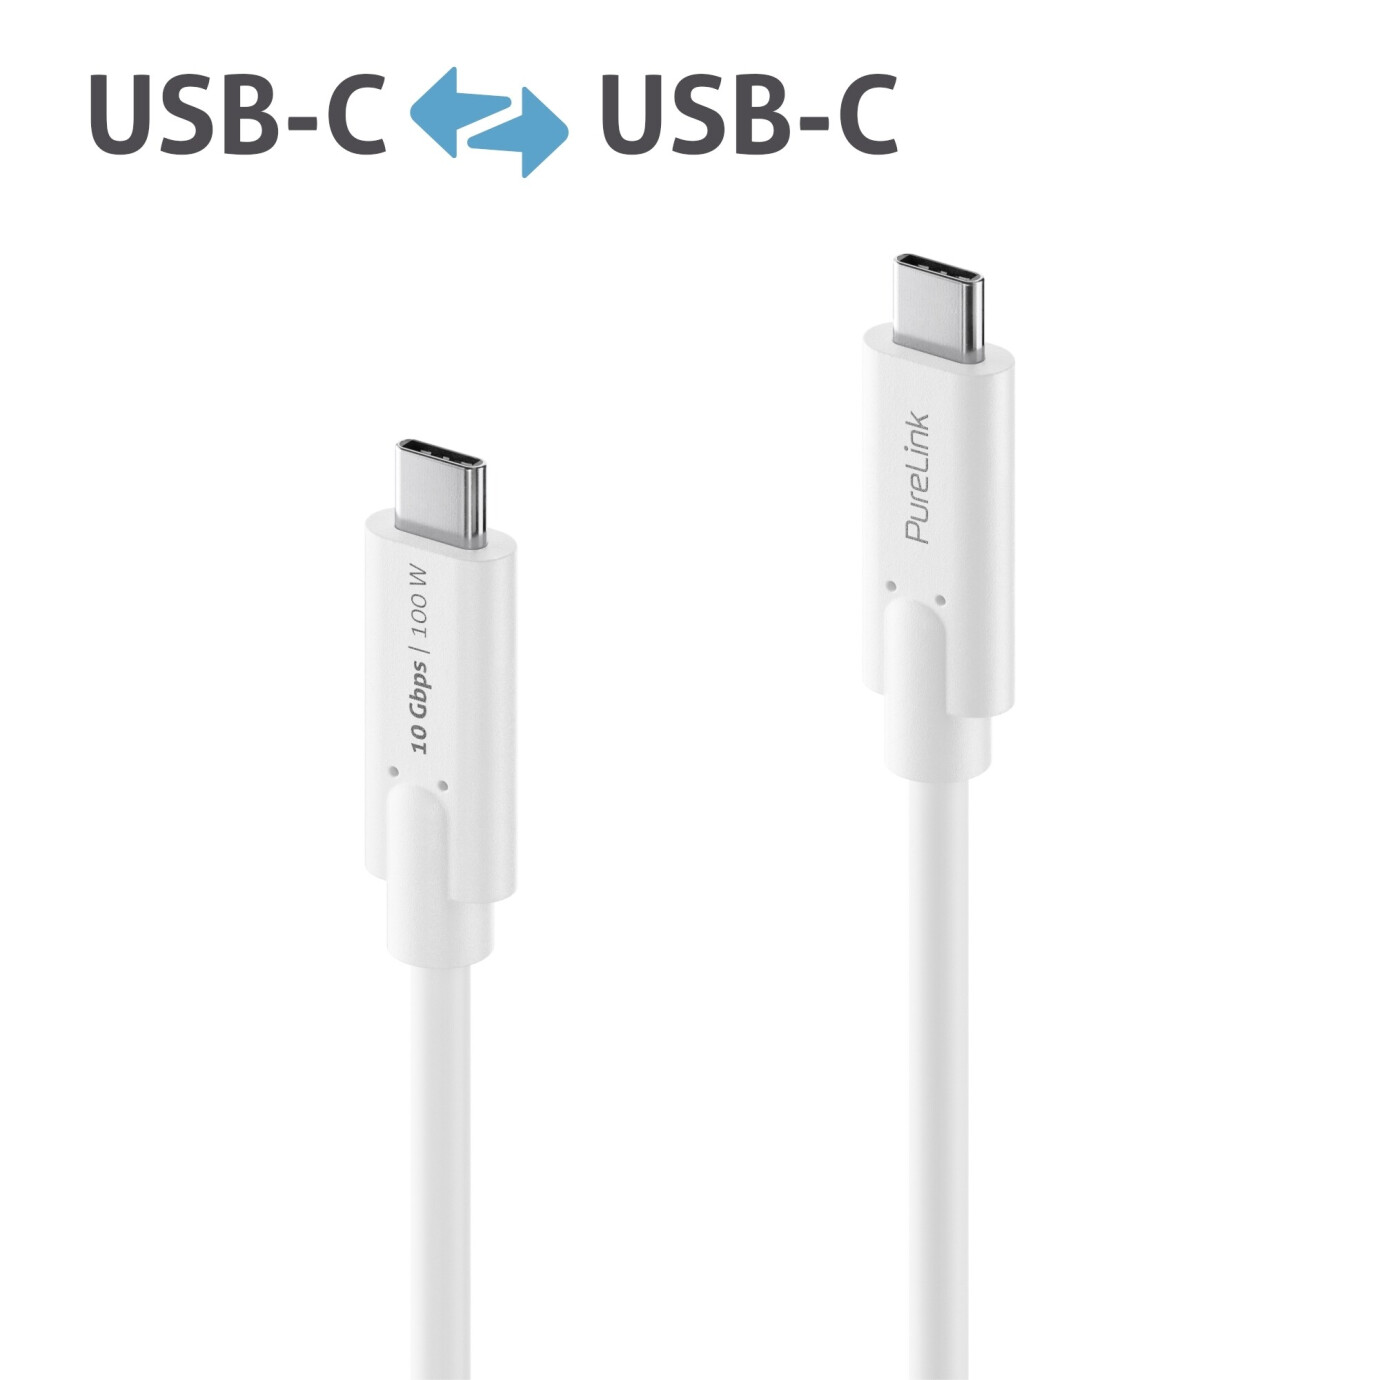 Purelink IS2510-010 USB-C auf USB-C (Gen 2) Kabel 1m weiß